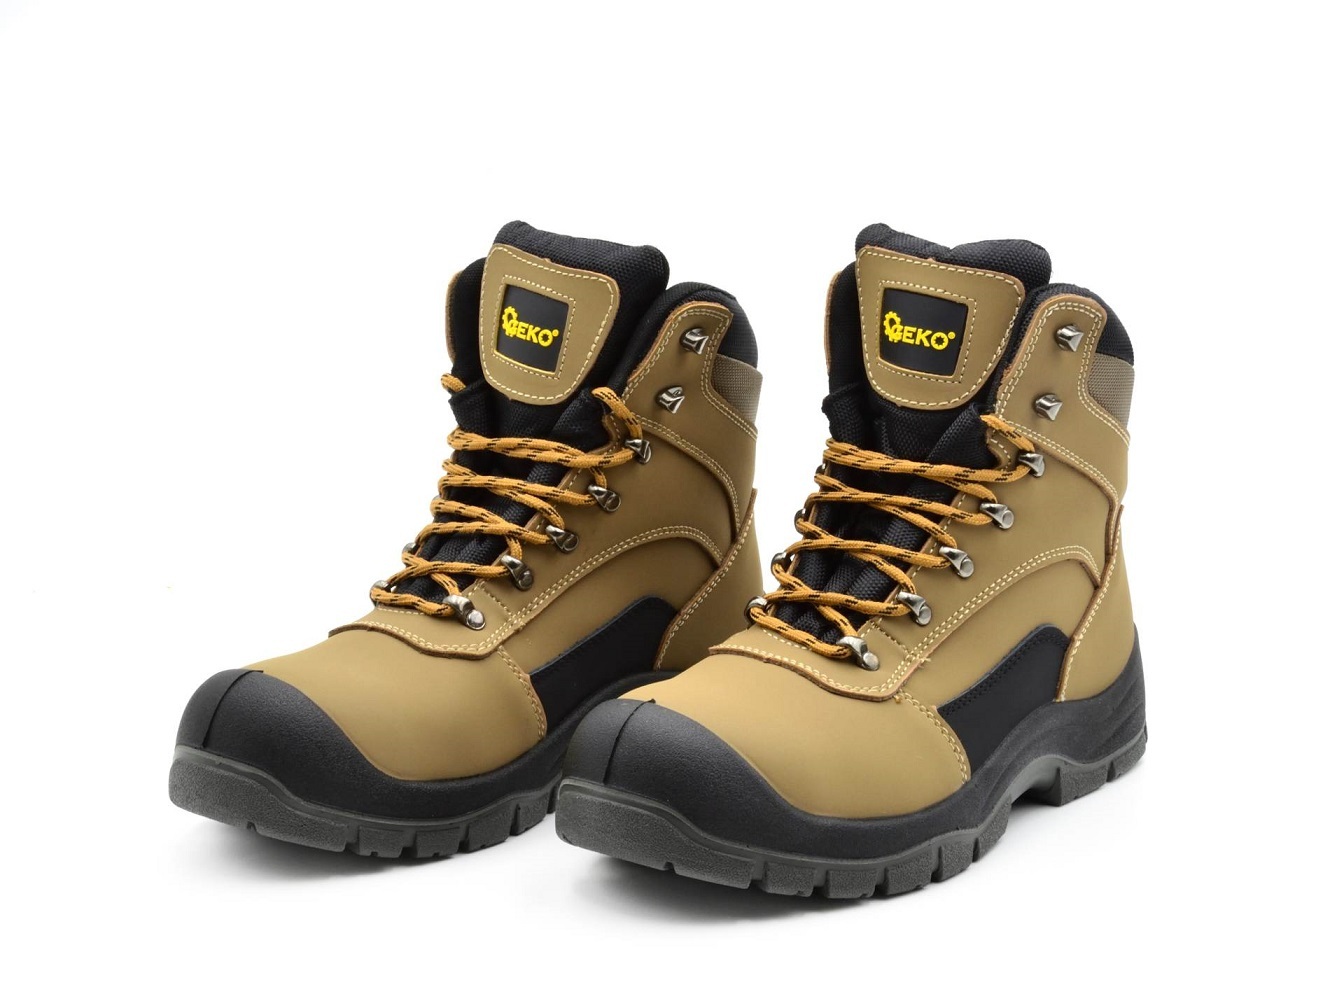 Ochranné pracovní boty velikost 42 GEKO nářadí G90541-42 + Dárek, servis bez starostí v hodnotě 300Kč